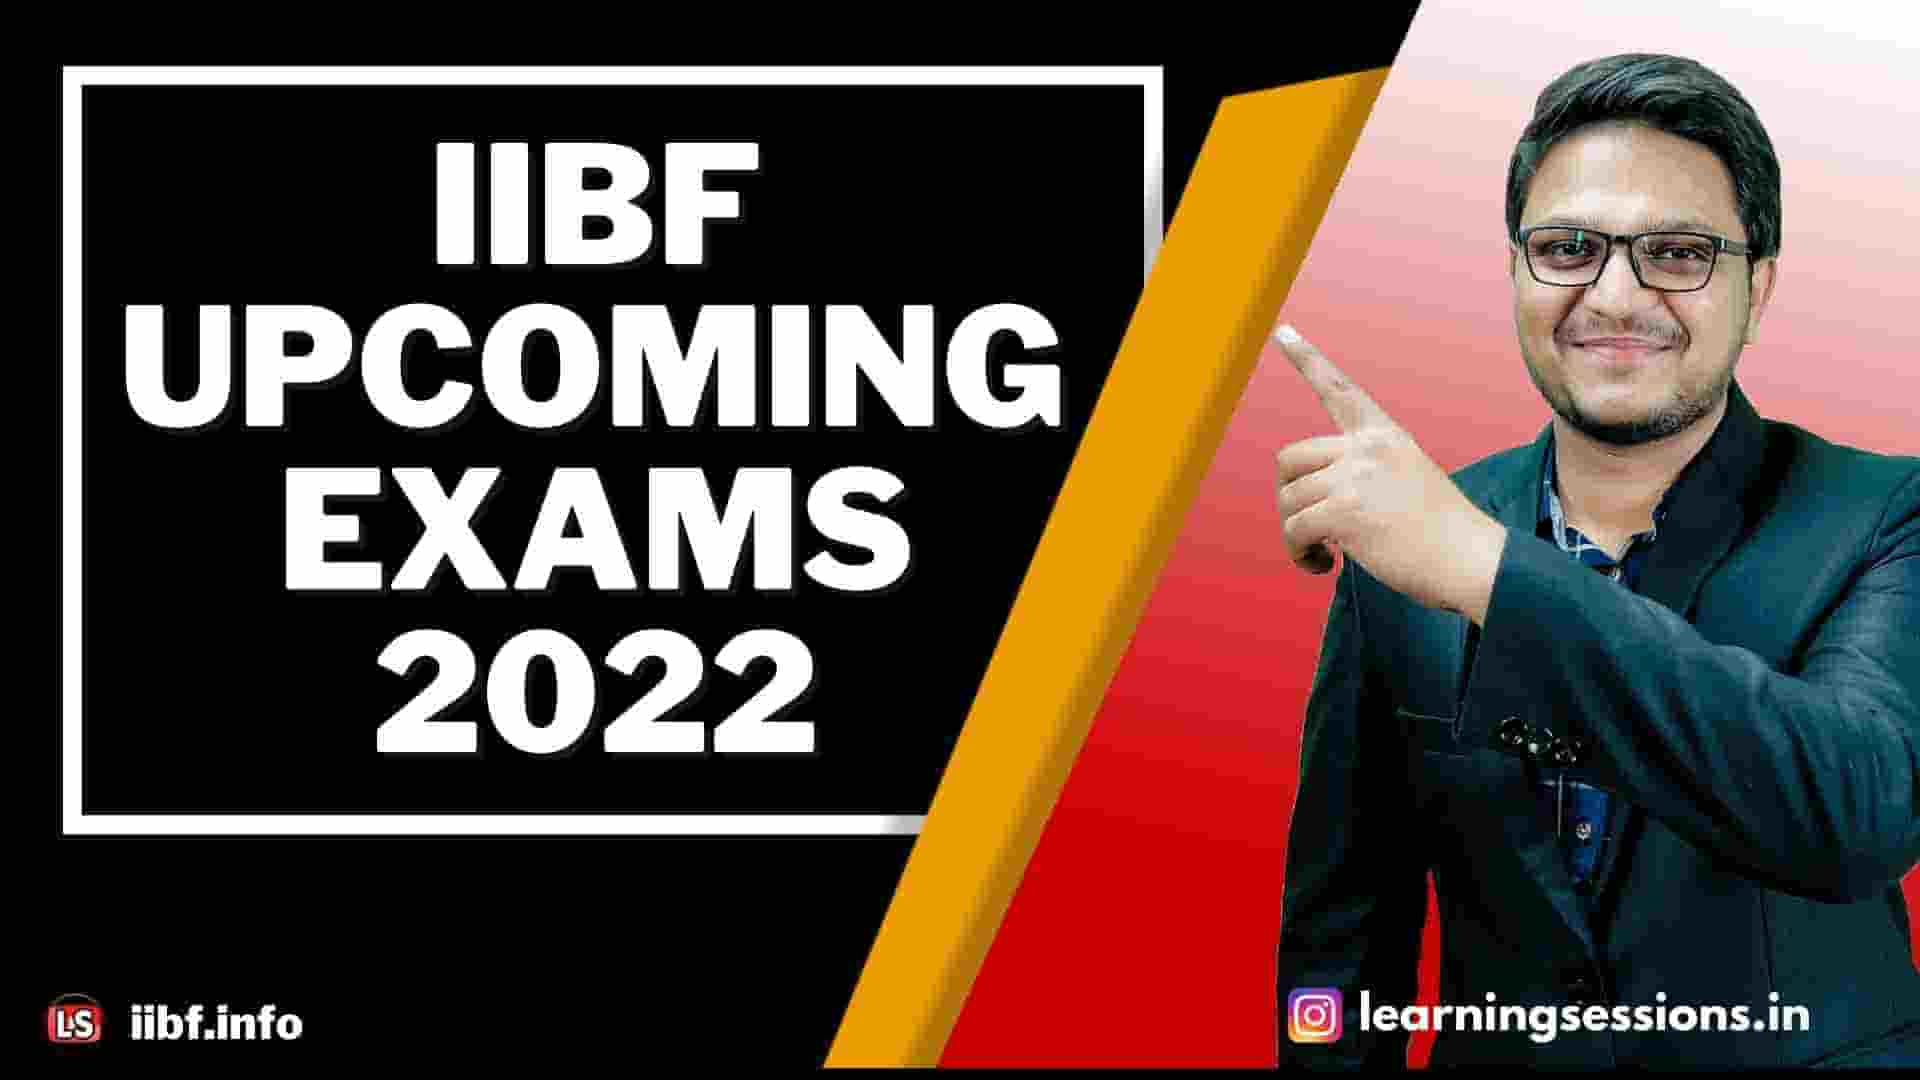 UPCOMING IIBF EXAMS 2022